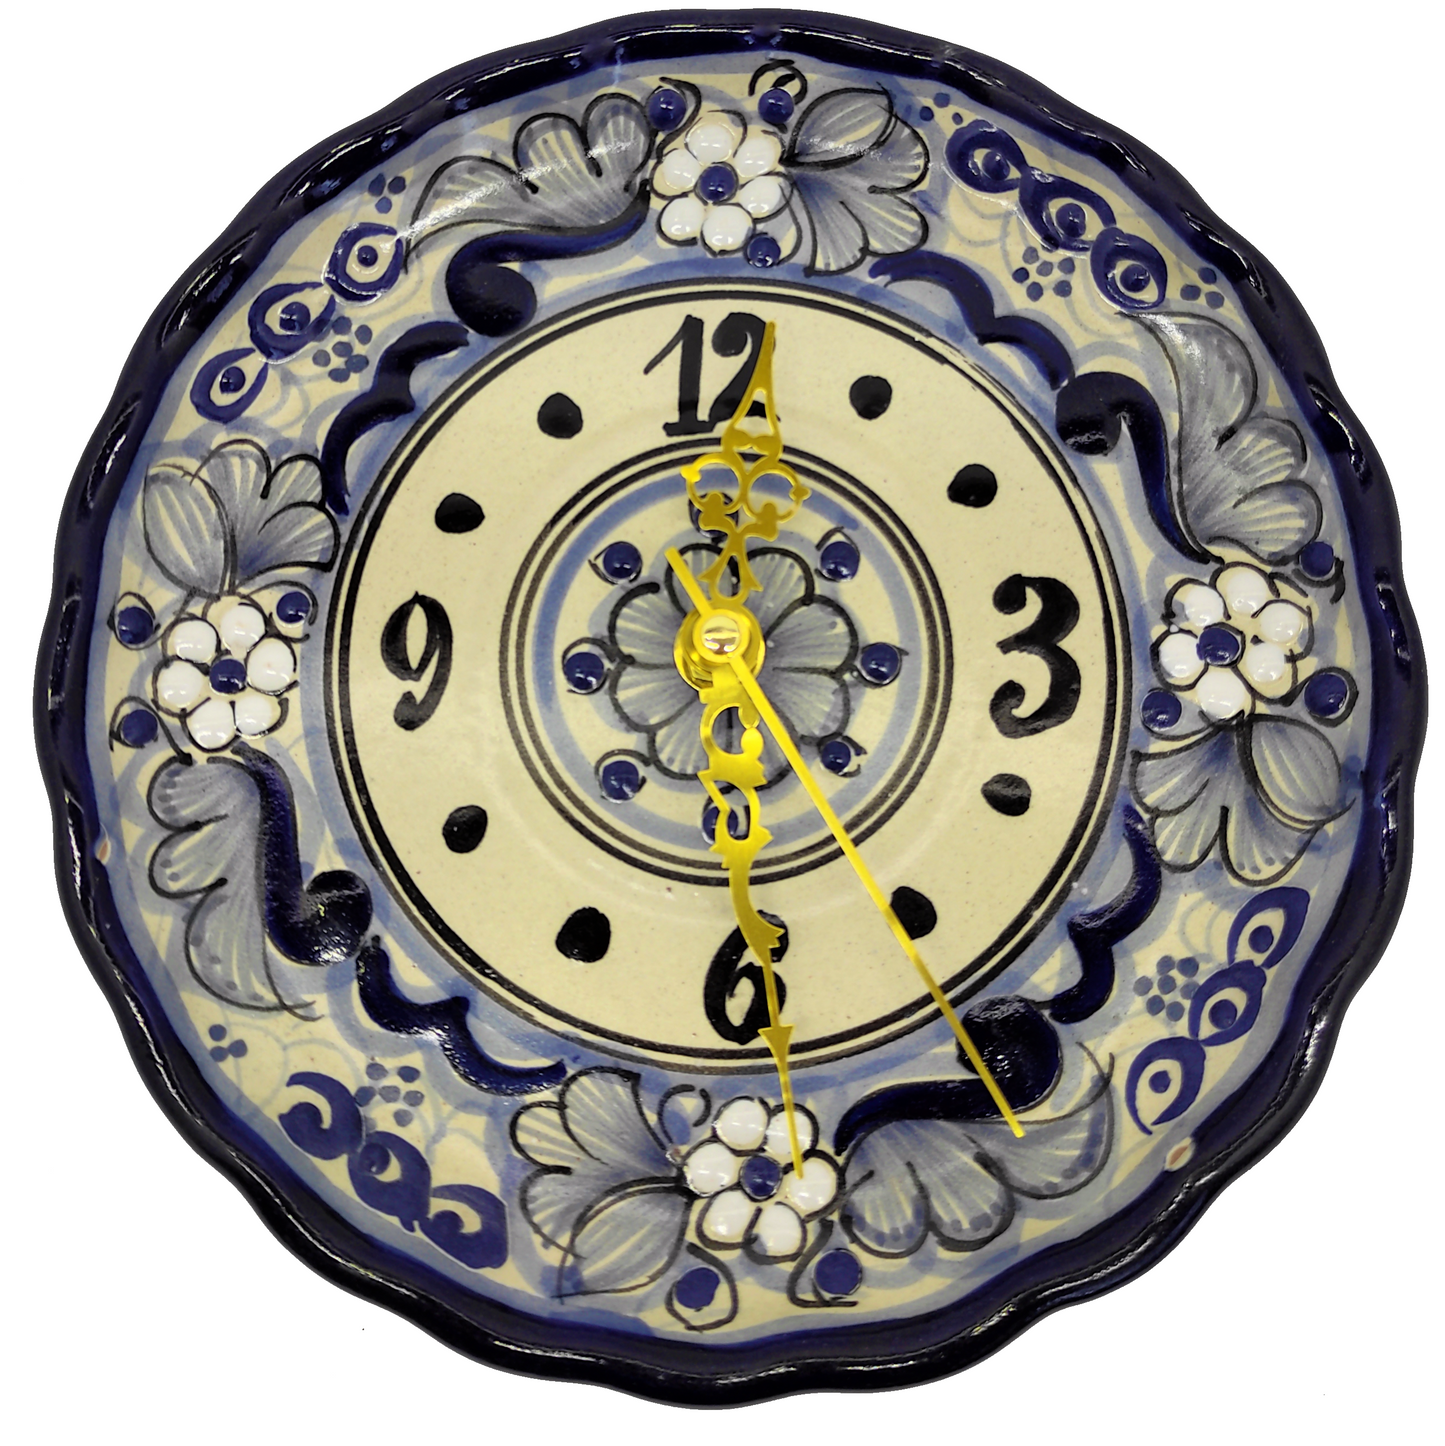 Reloj redondo 20cm | Talavera 100% original